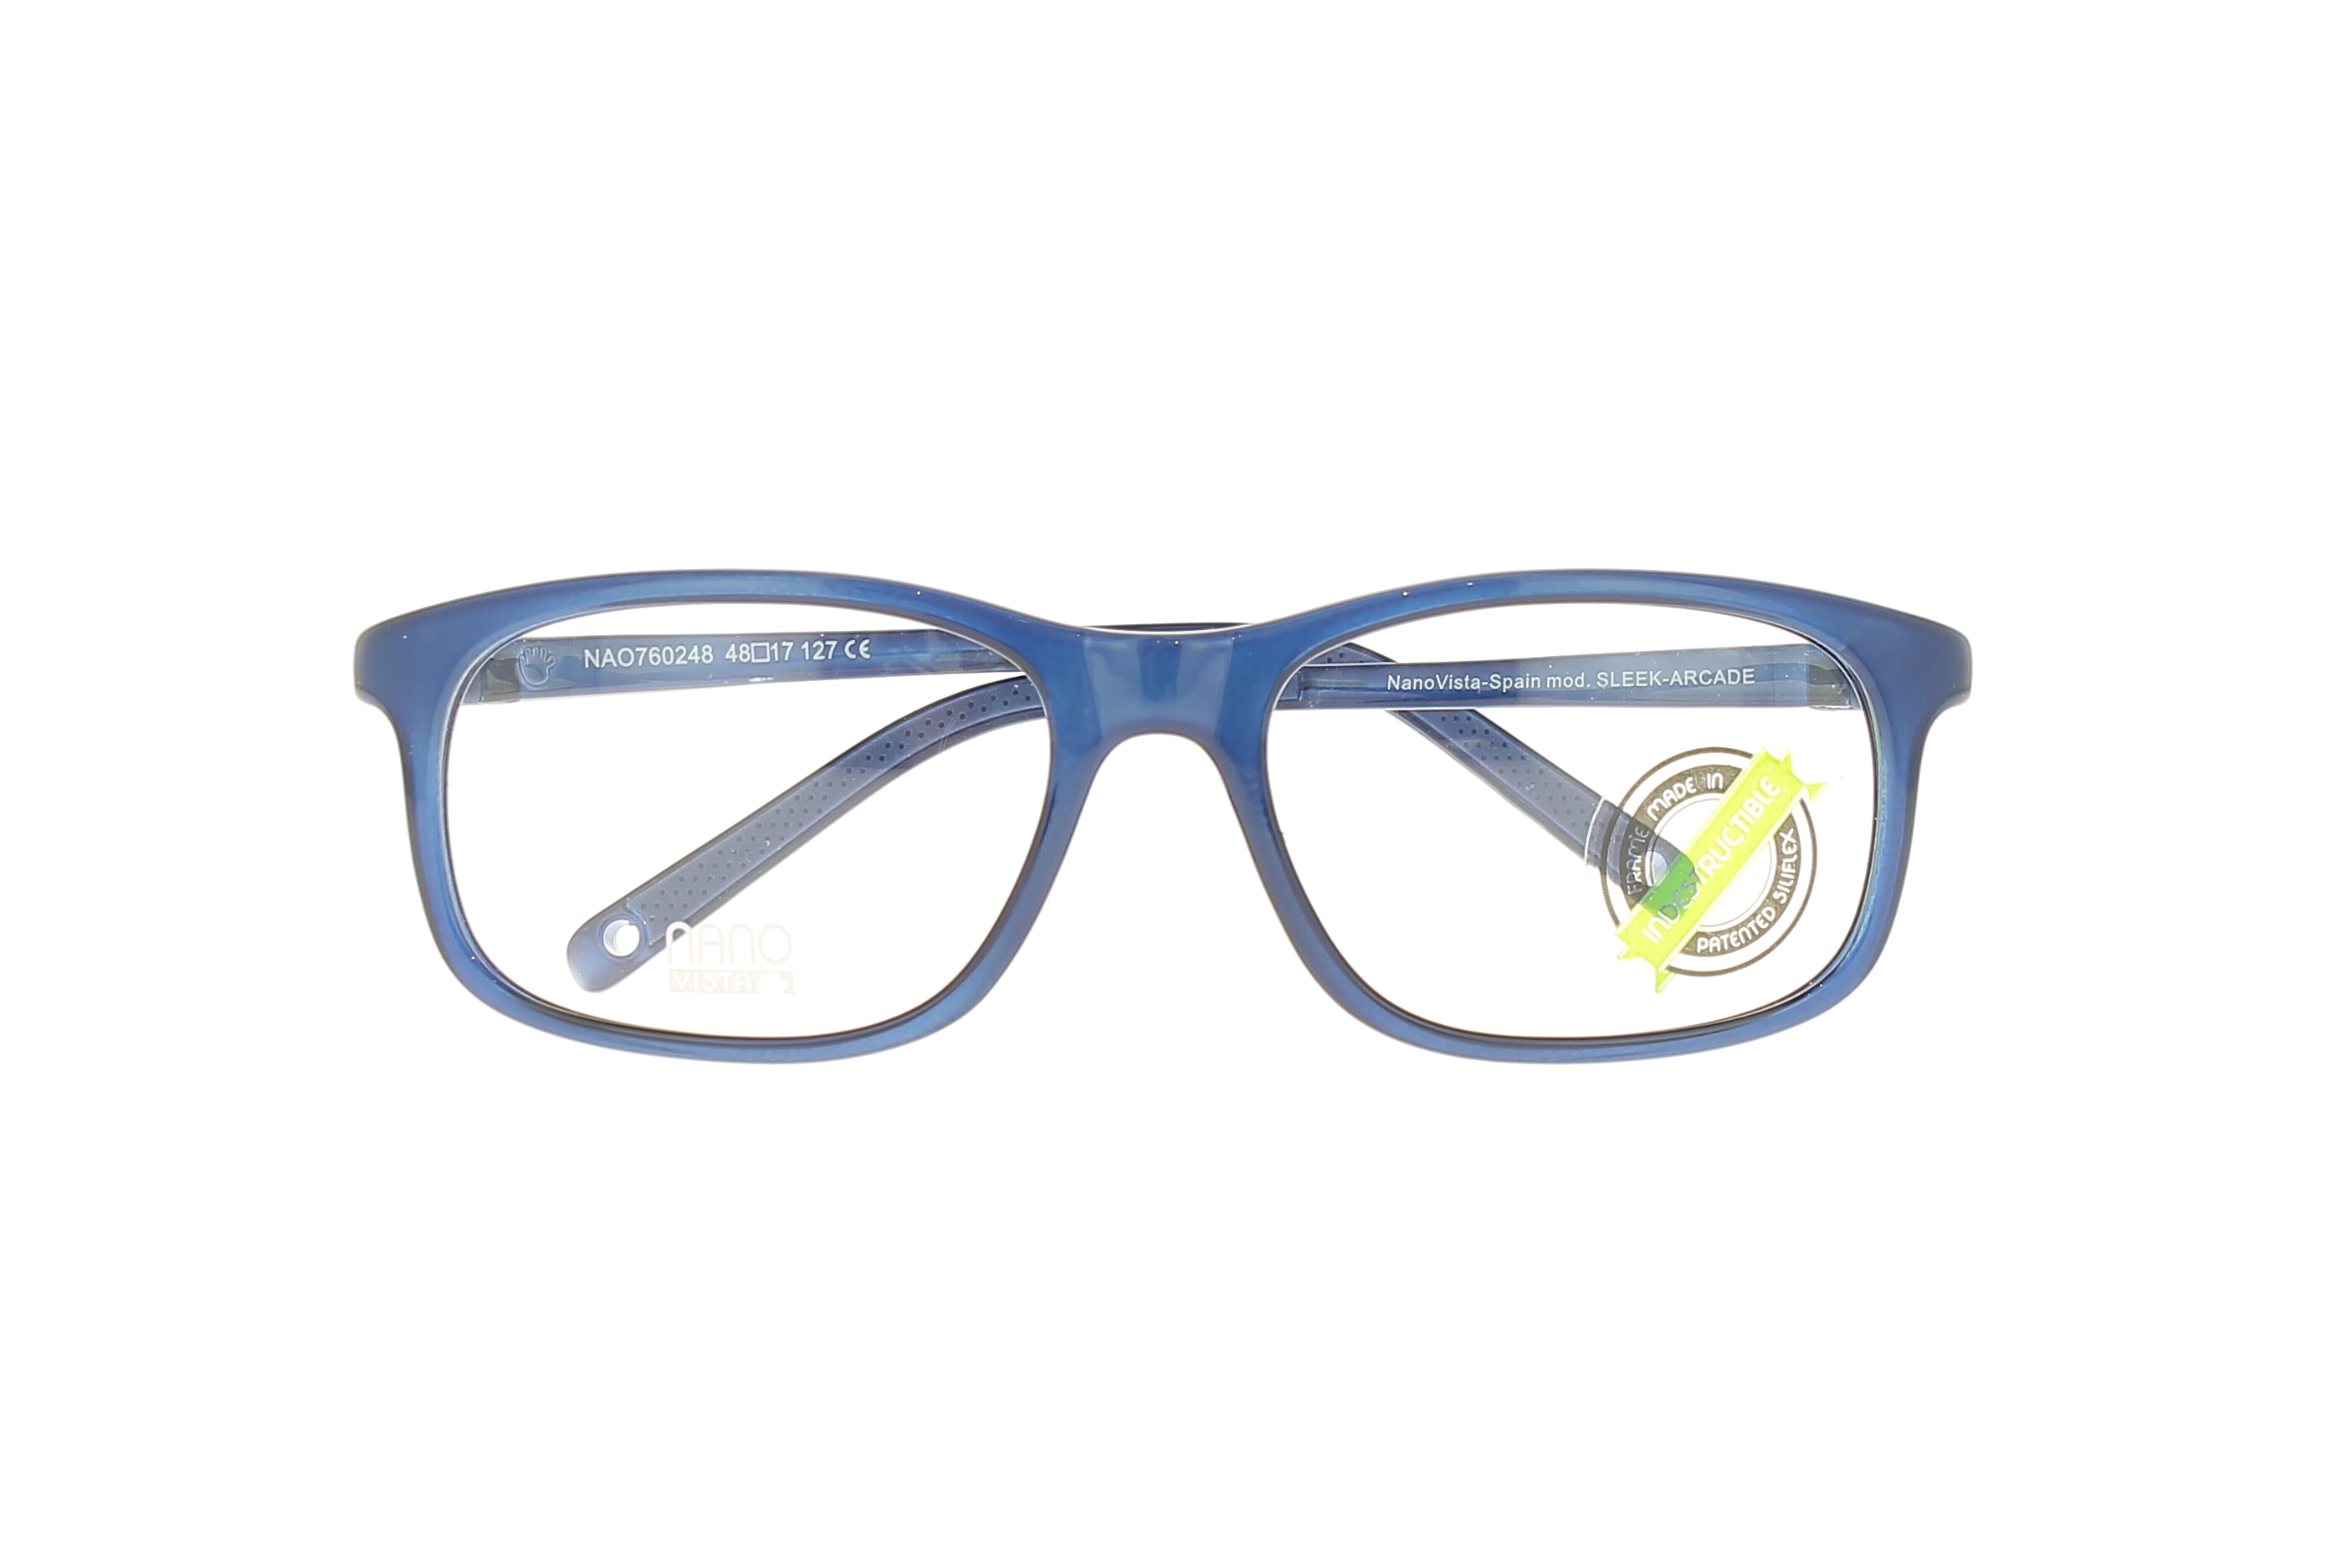 Paire de lunettes de vue Nano Sleek arcade couleur marine - Doyle